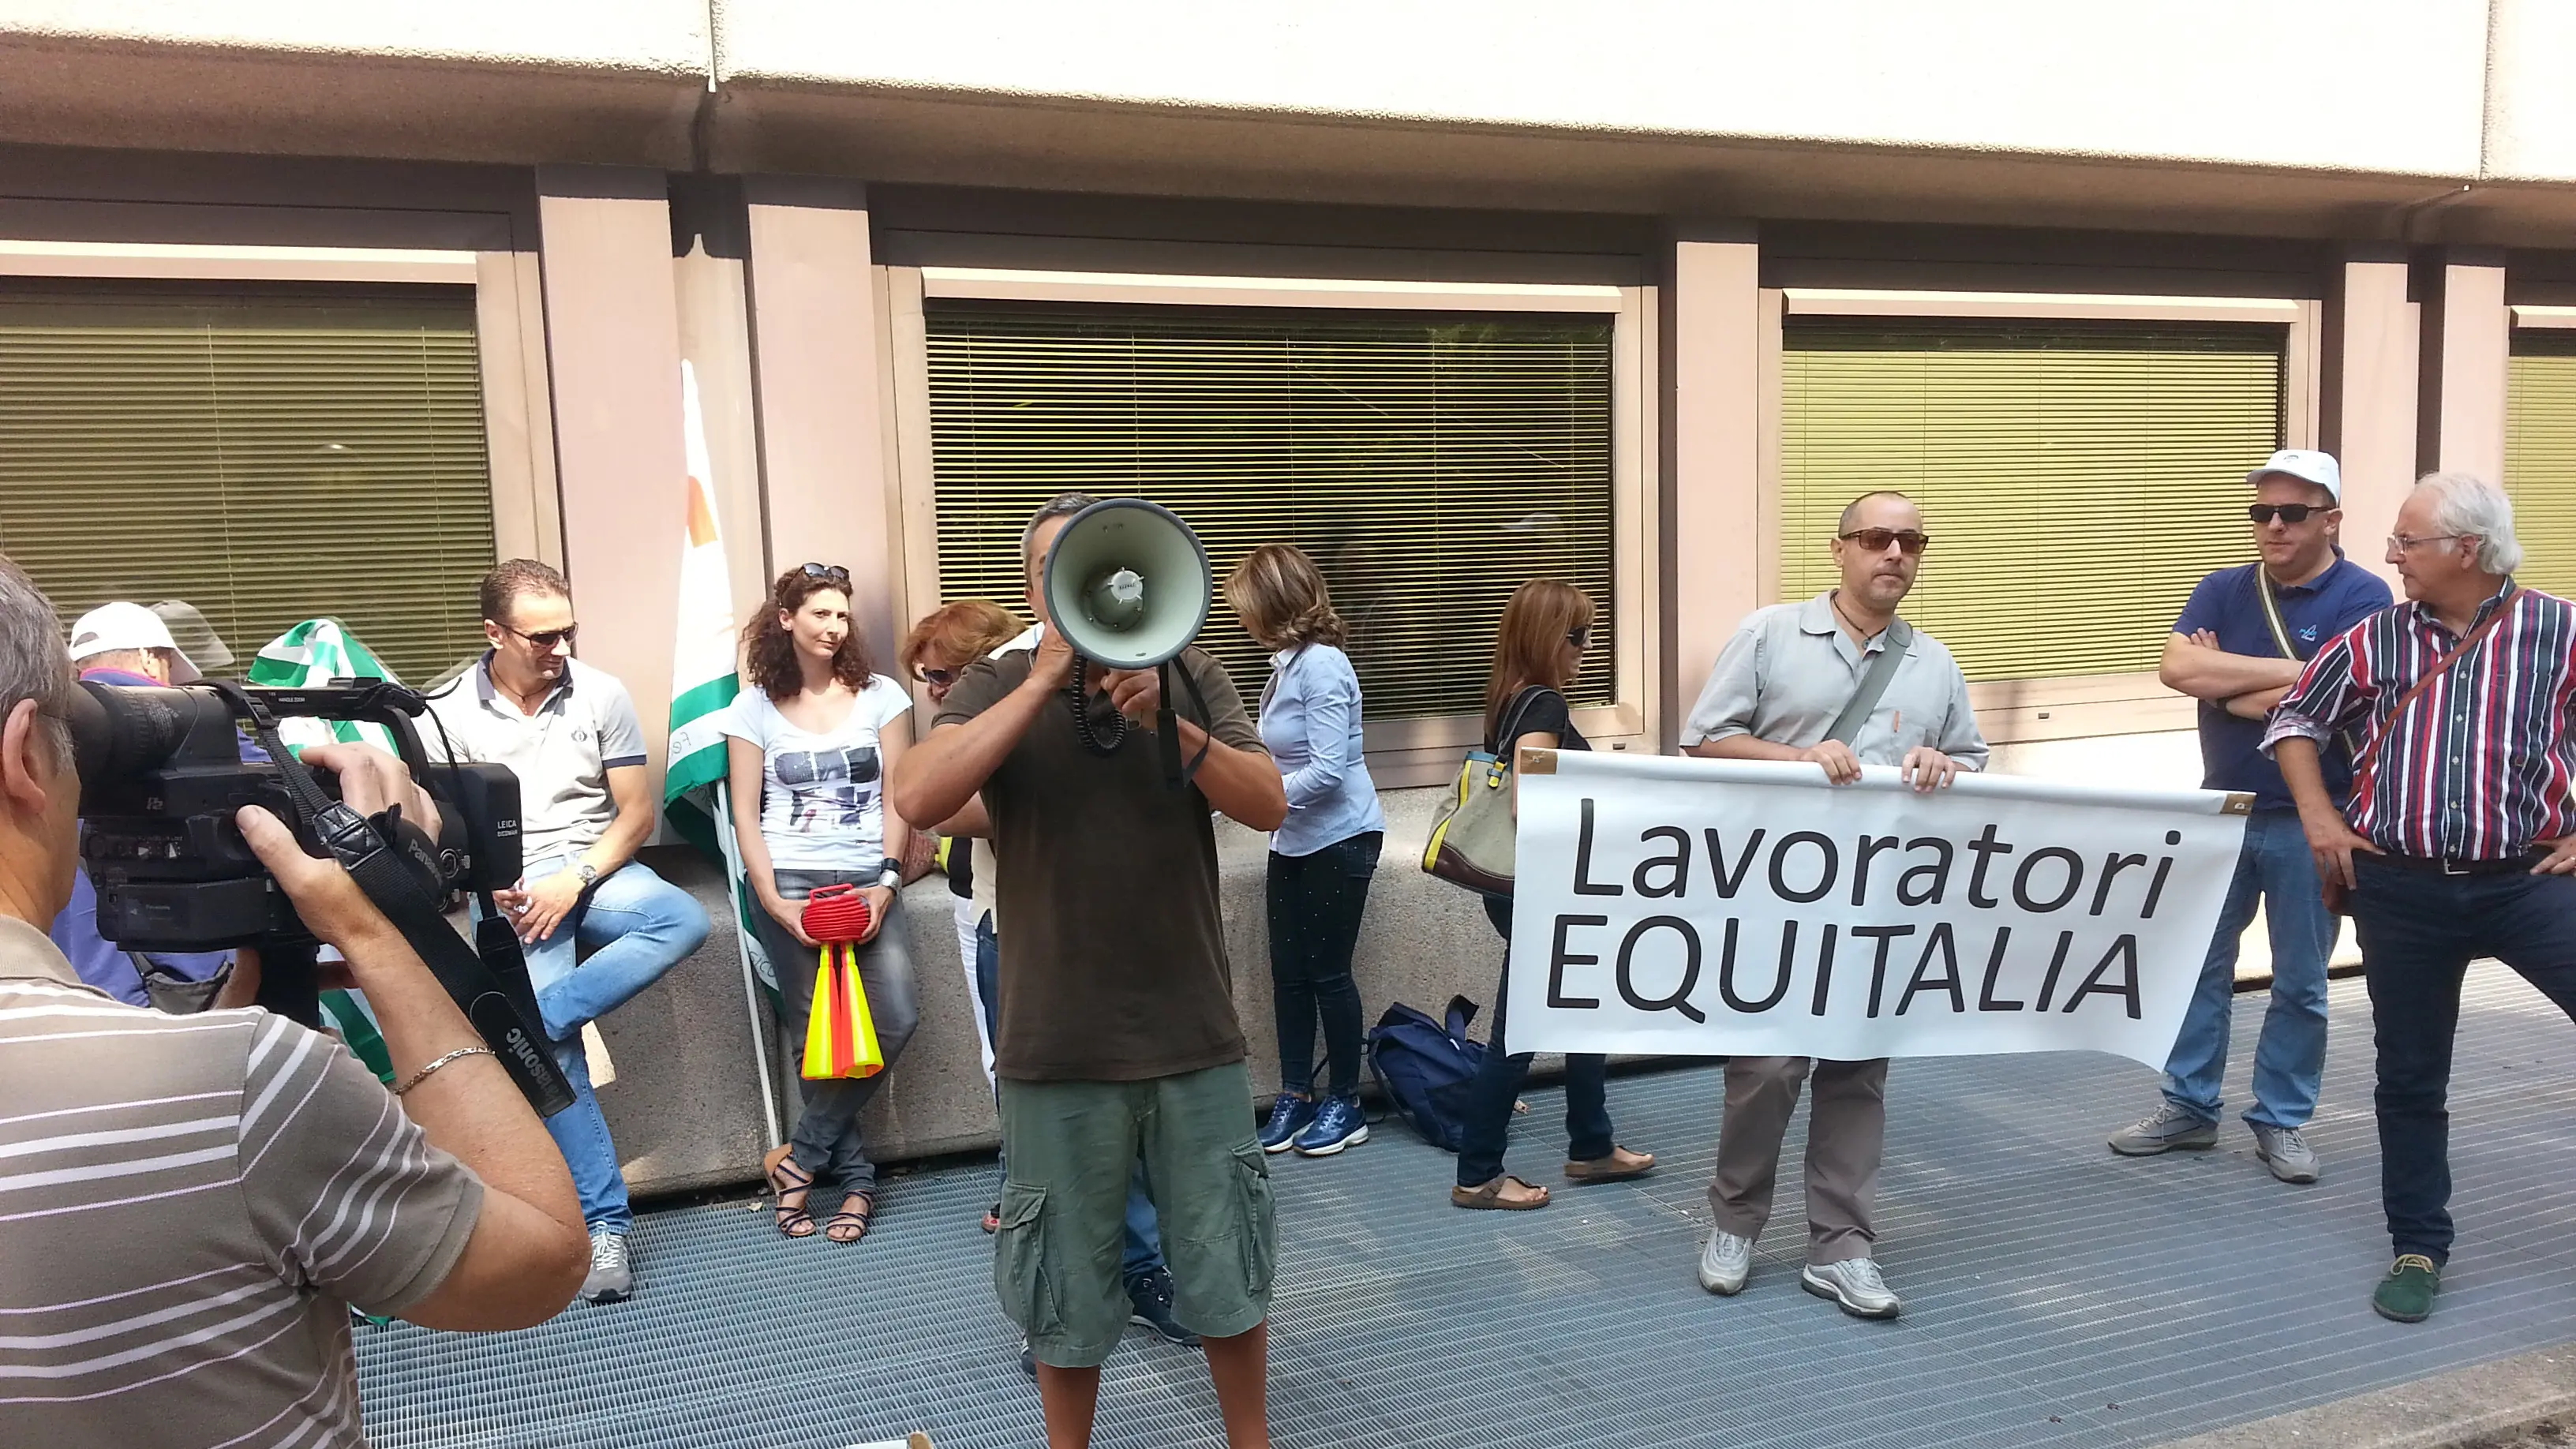 Una protesta dei lavoratori Equitalia (foto Cgil Umbria)